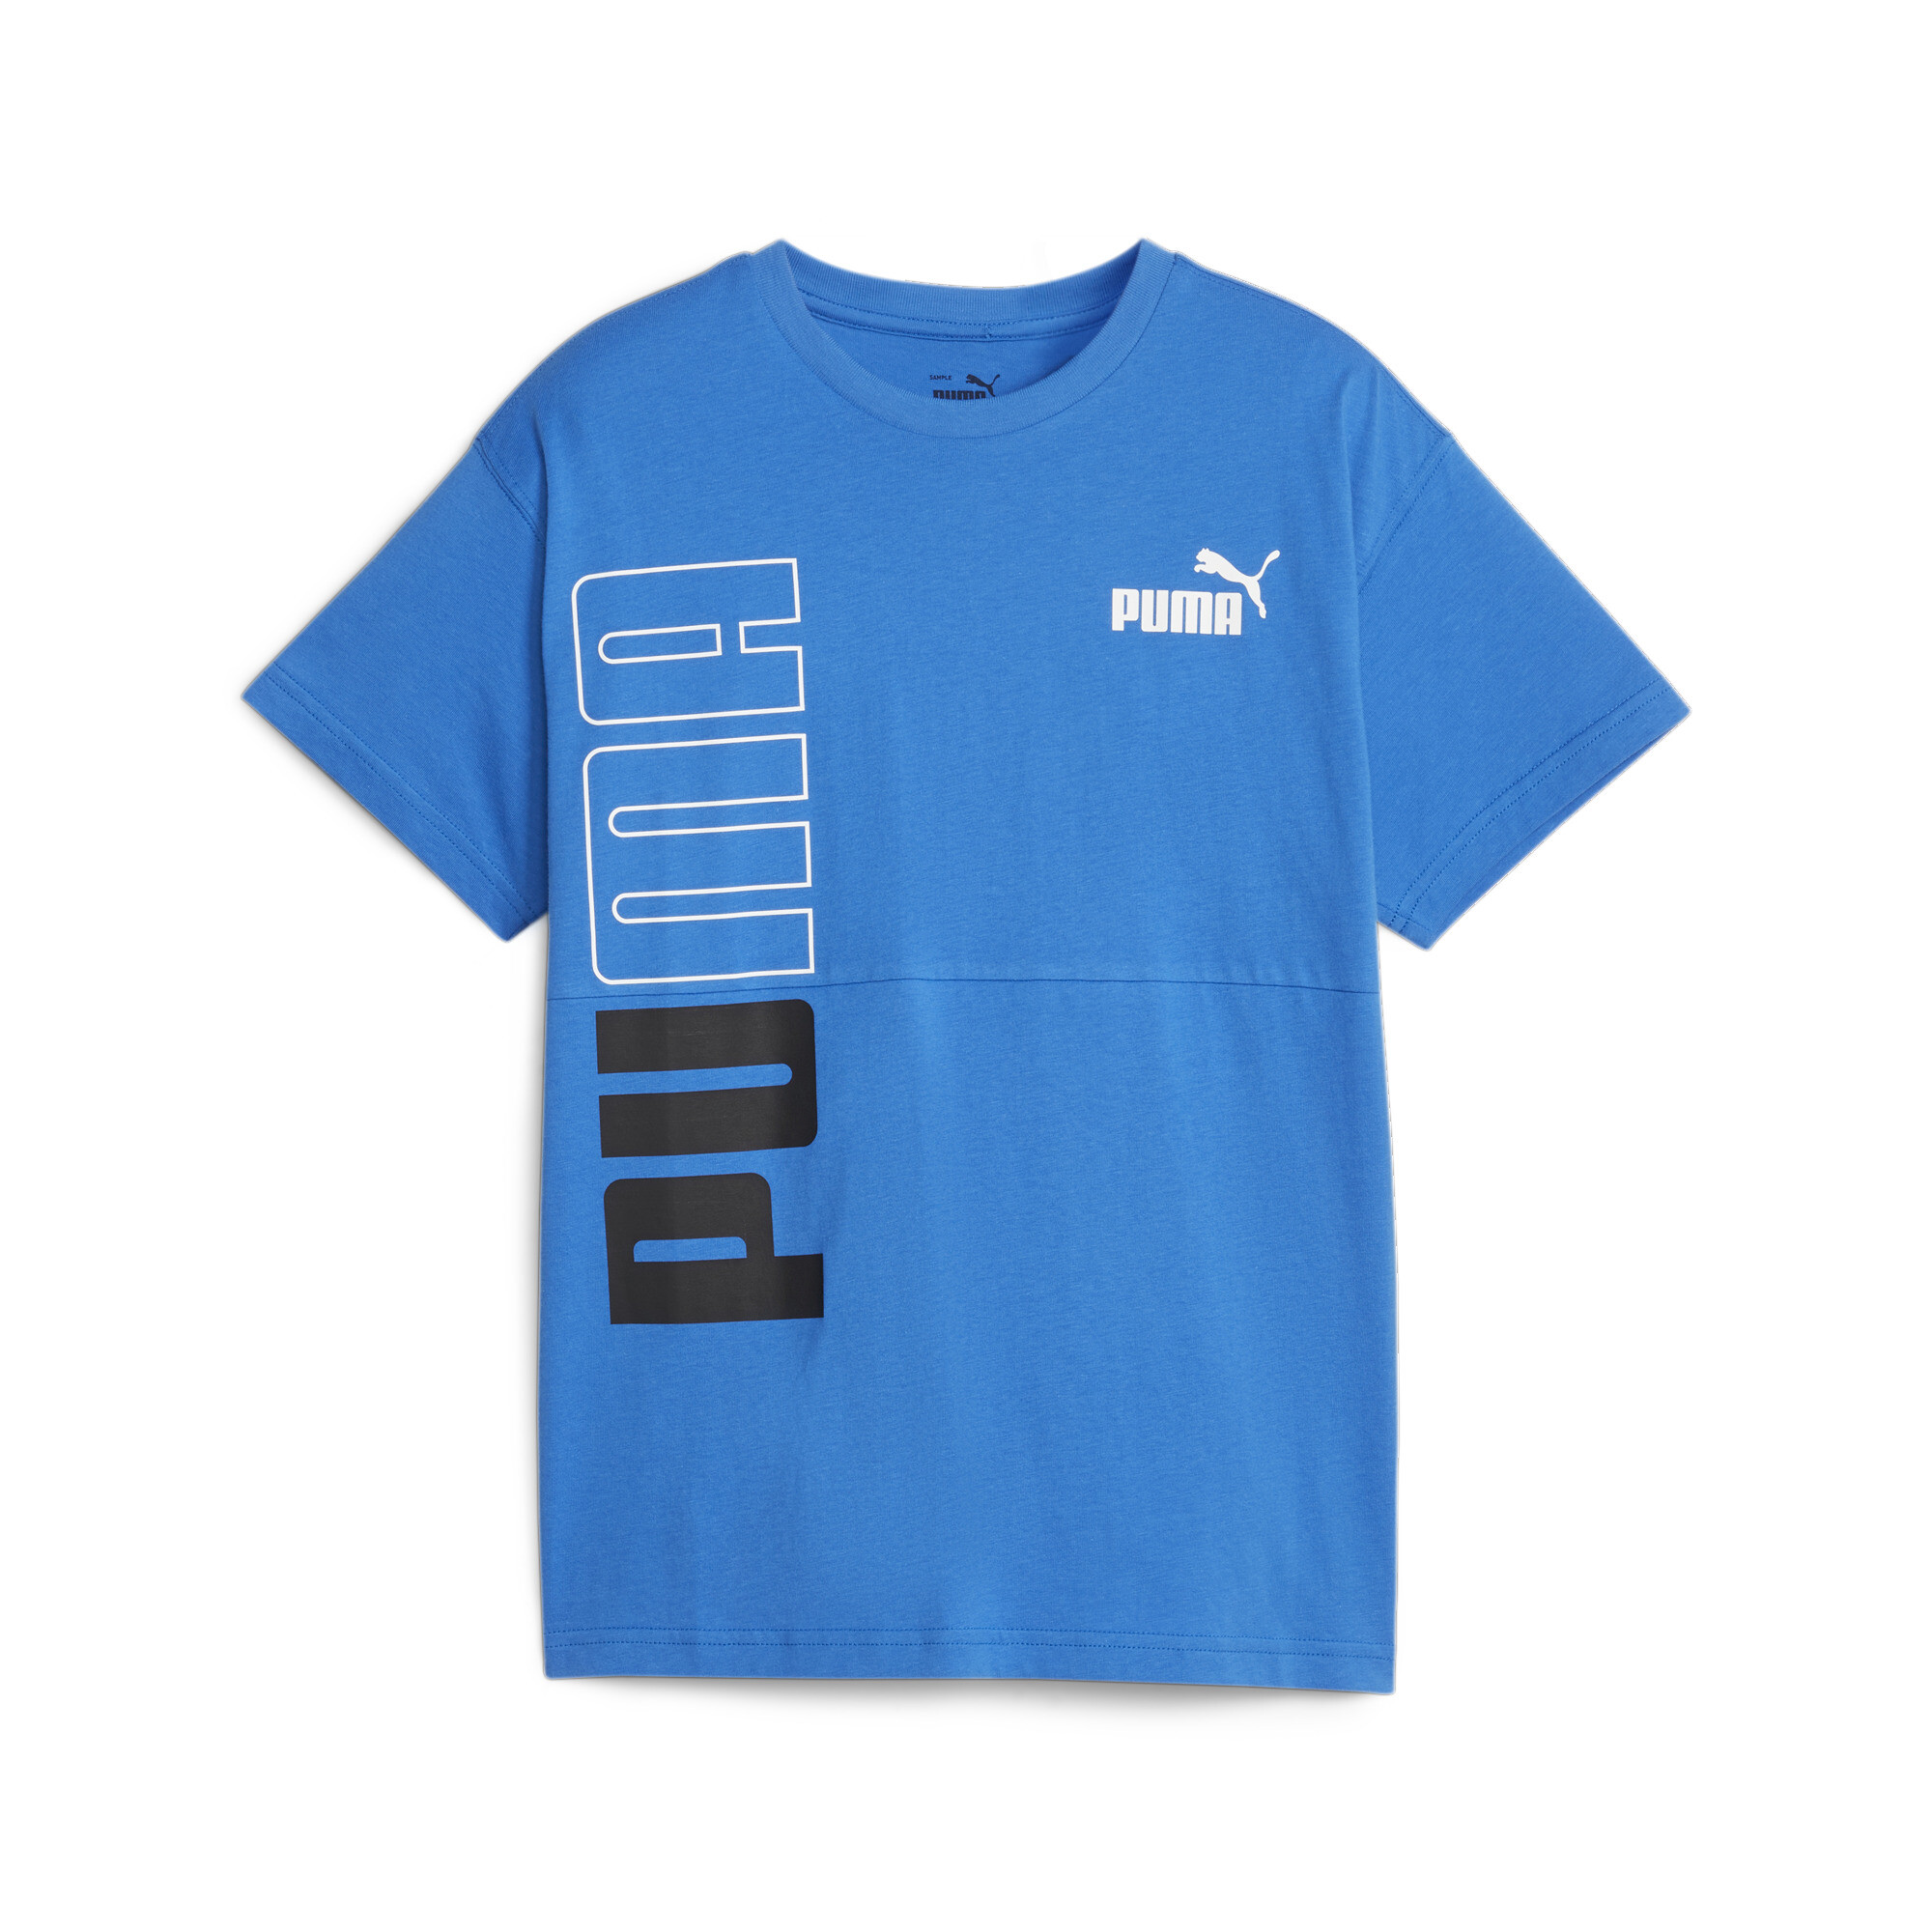  プーマ キッズ ボーイズ PUMA POWER カラーブロック Tシャツ 120-160cm メンズ Racing Blue ｜PUMA.com